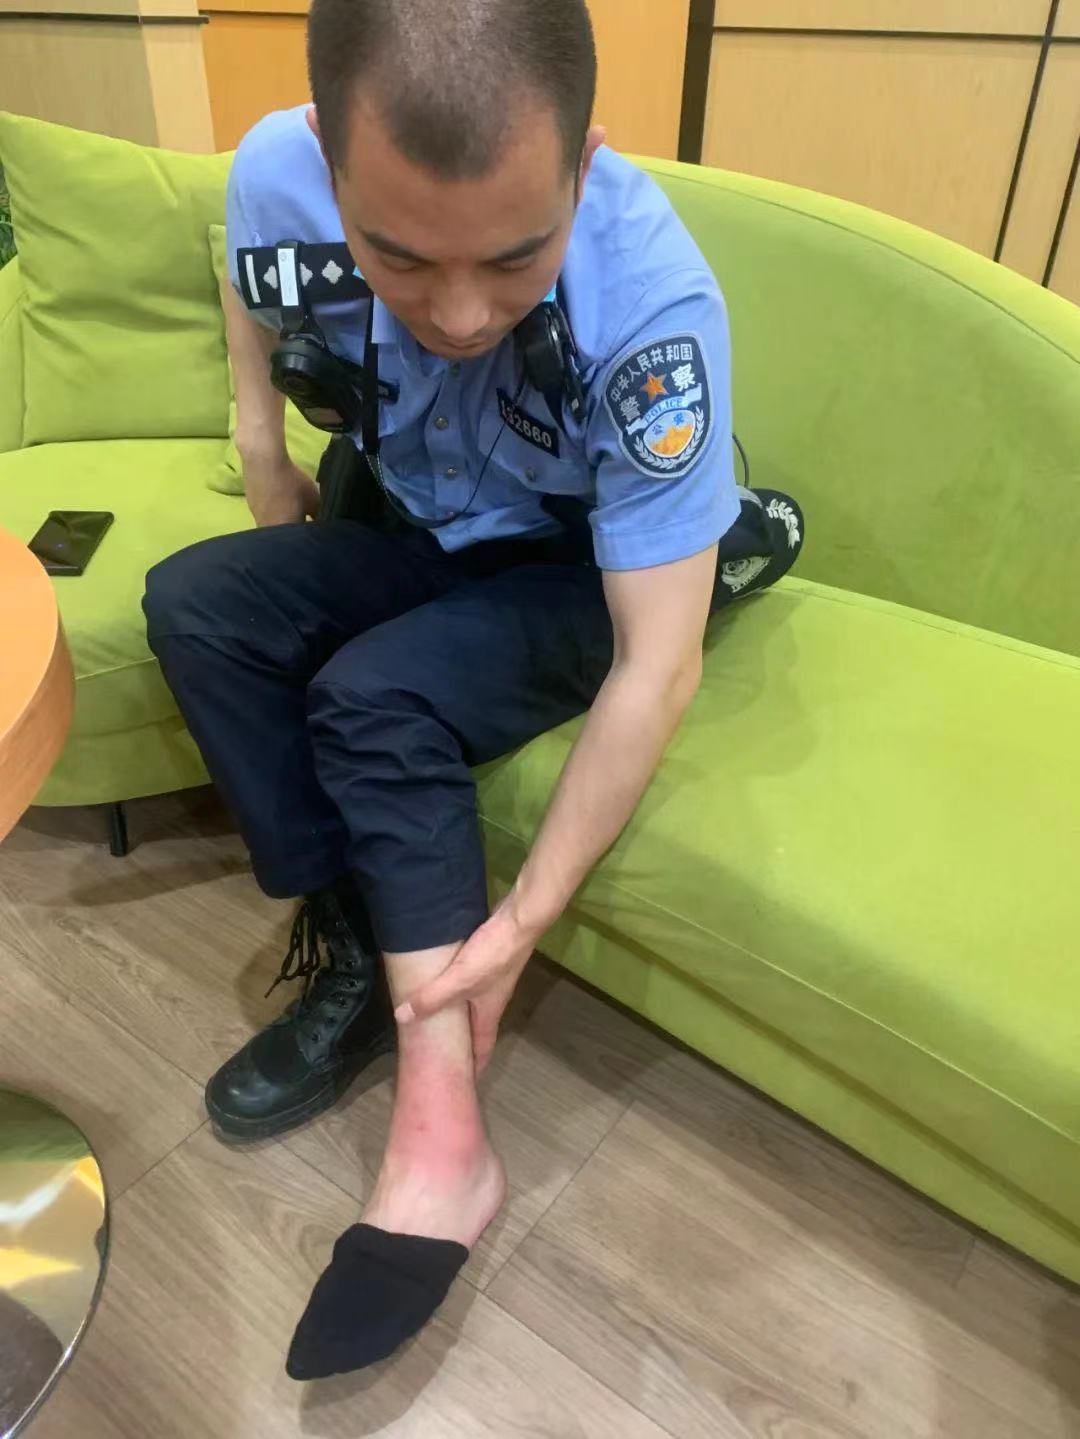 警察的脚受伤图片